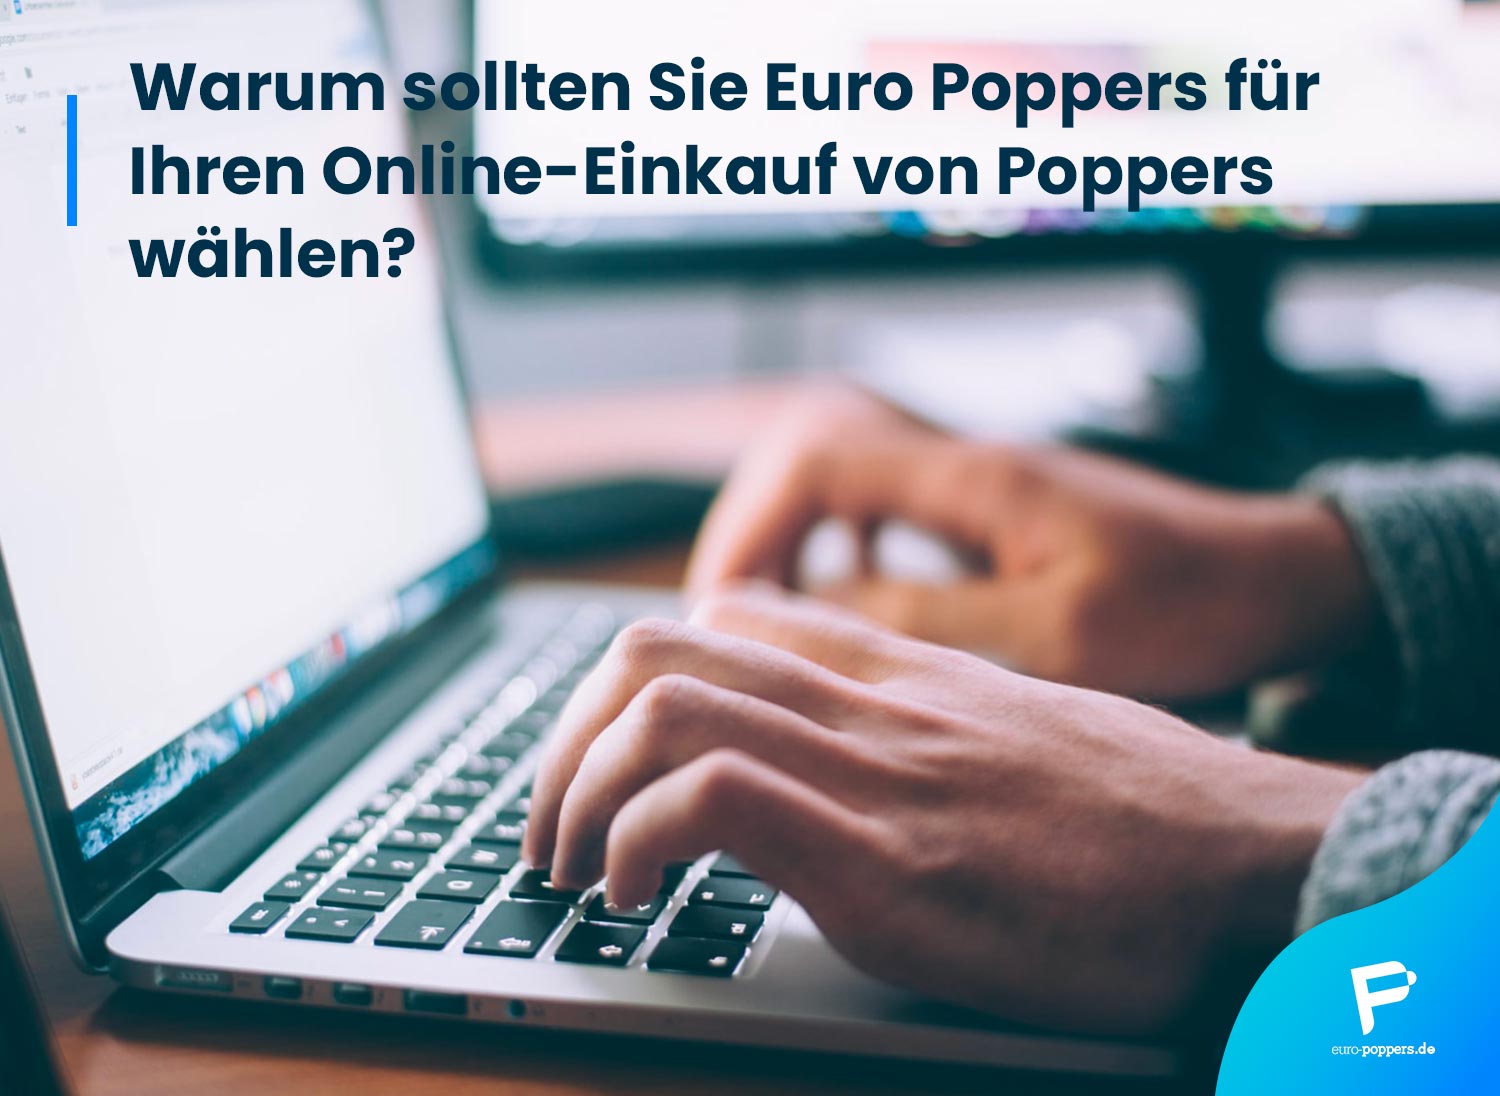 You are currently viewing Warum sollten Sie Euro Poppers für Ihren Online-Einkauf von Poppers wählen?